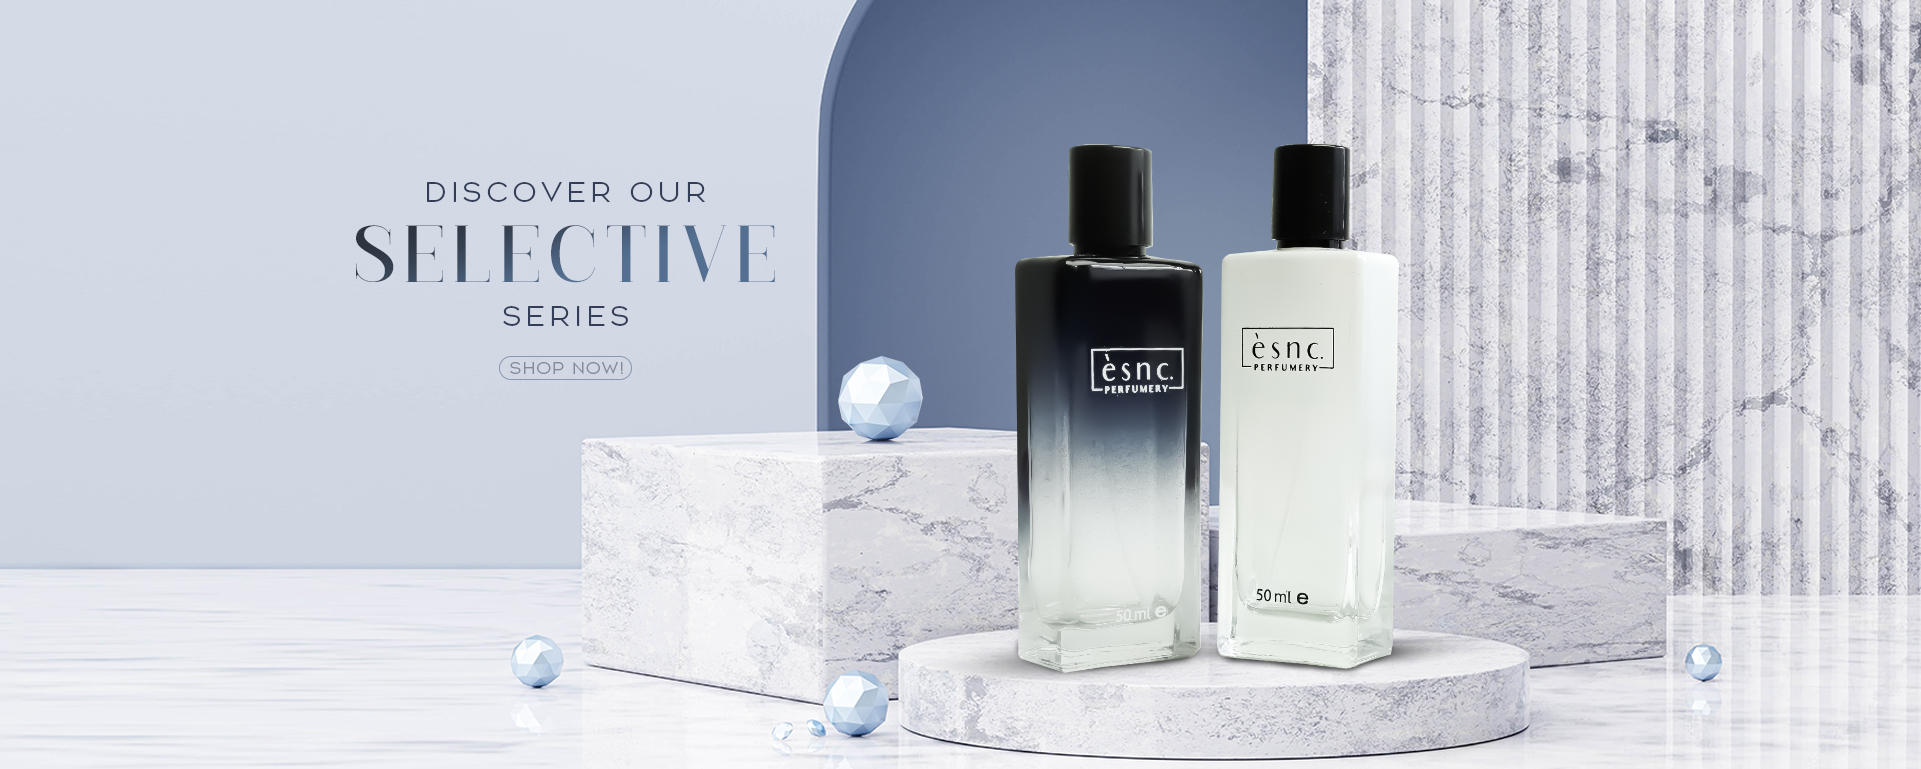 Buy Louis Vuitton DANS LA PEAU Eau de Parfum - 200 ml Online In India